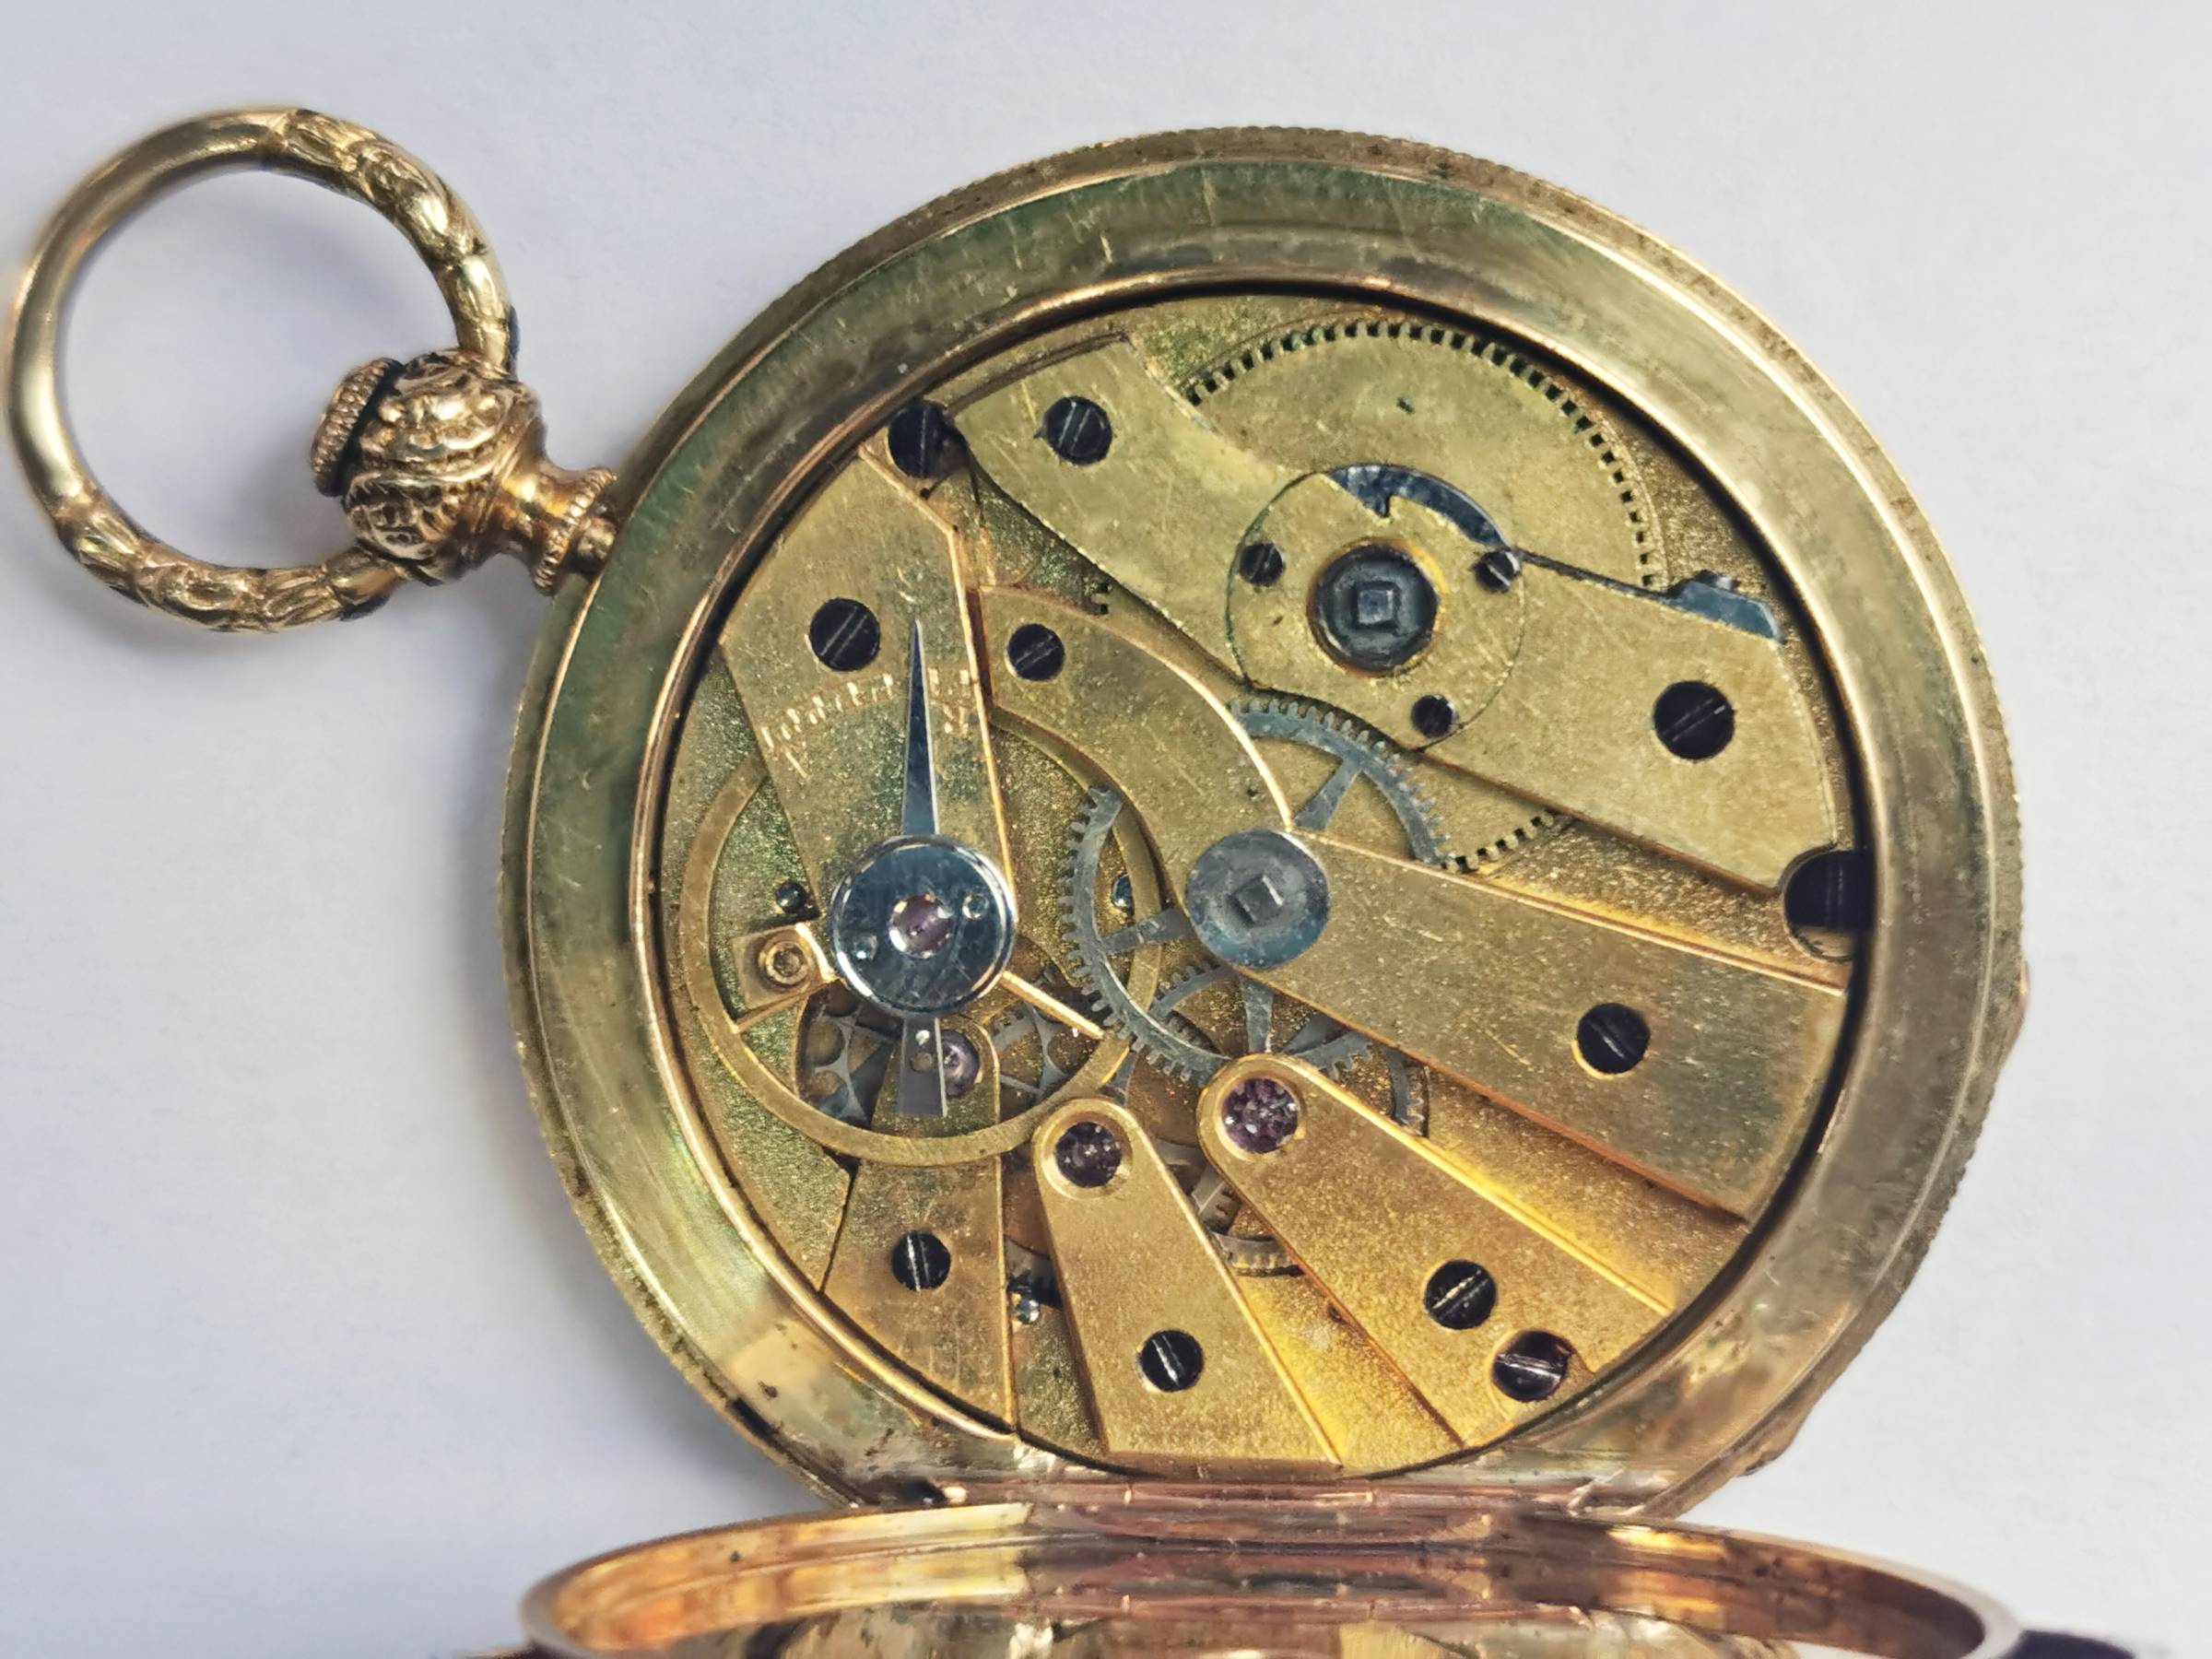 Zlaté hodinky zdobené emaily - Courvoisier Freres